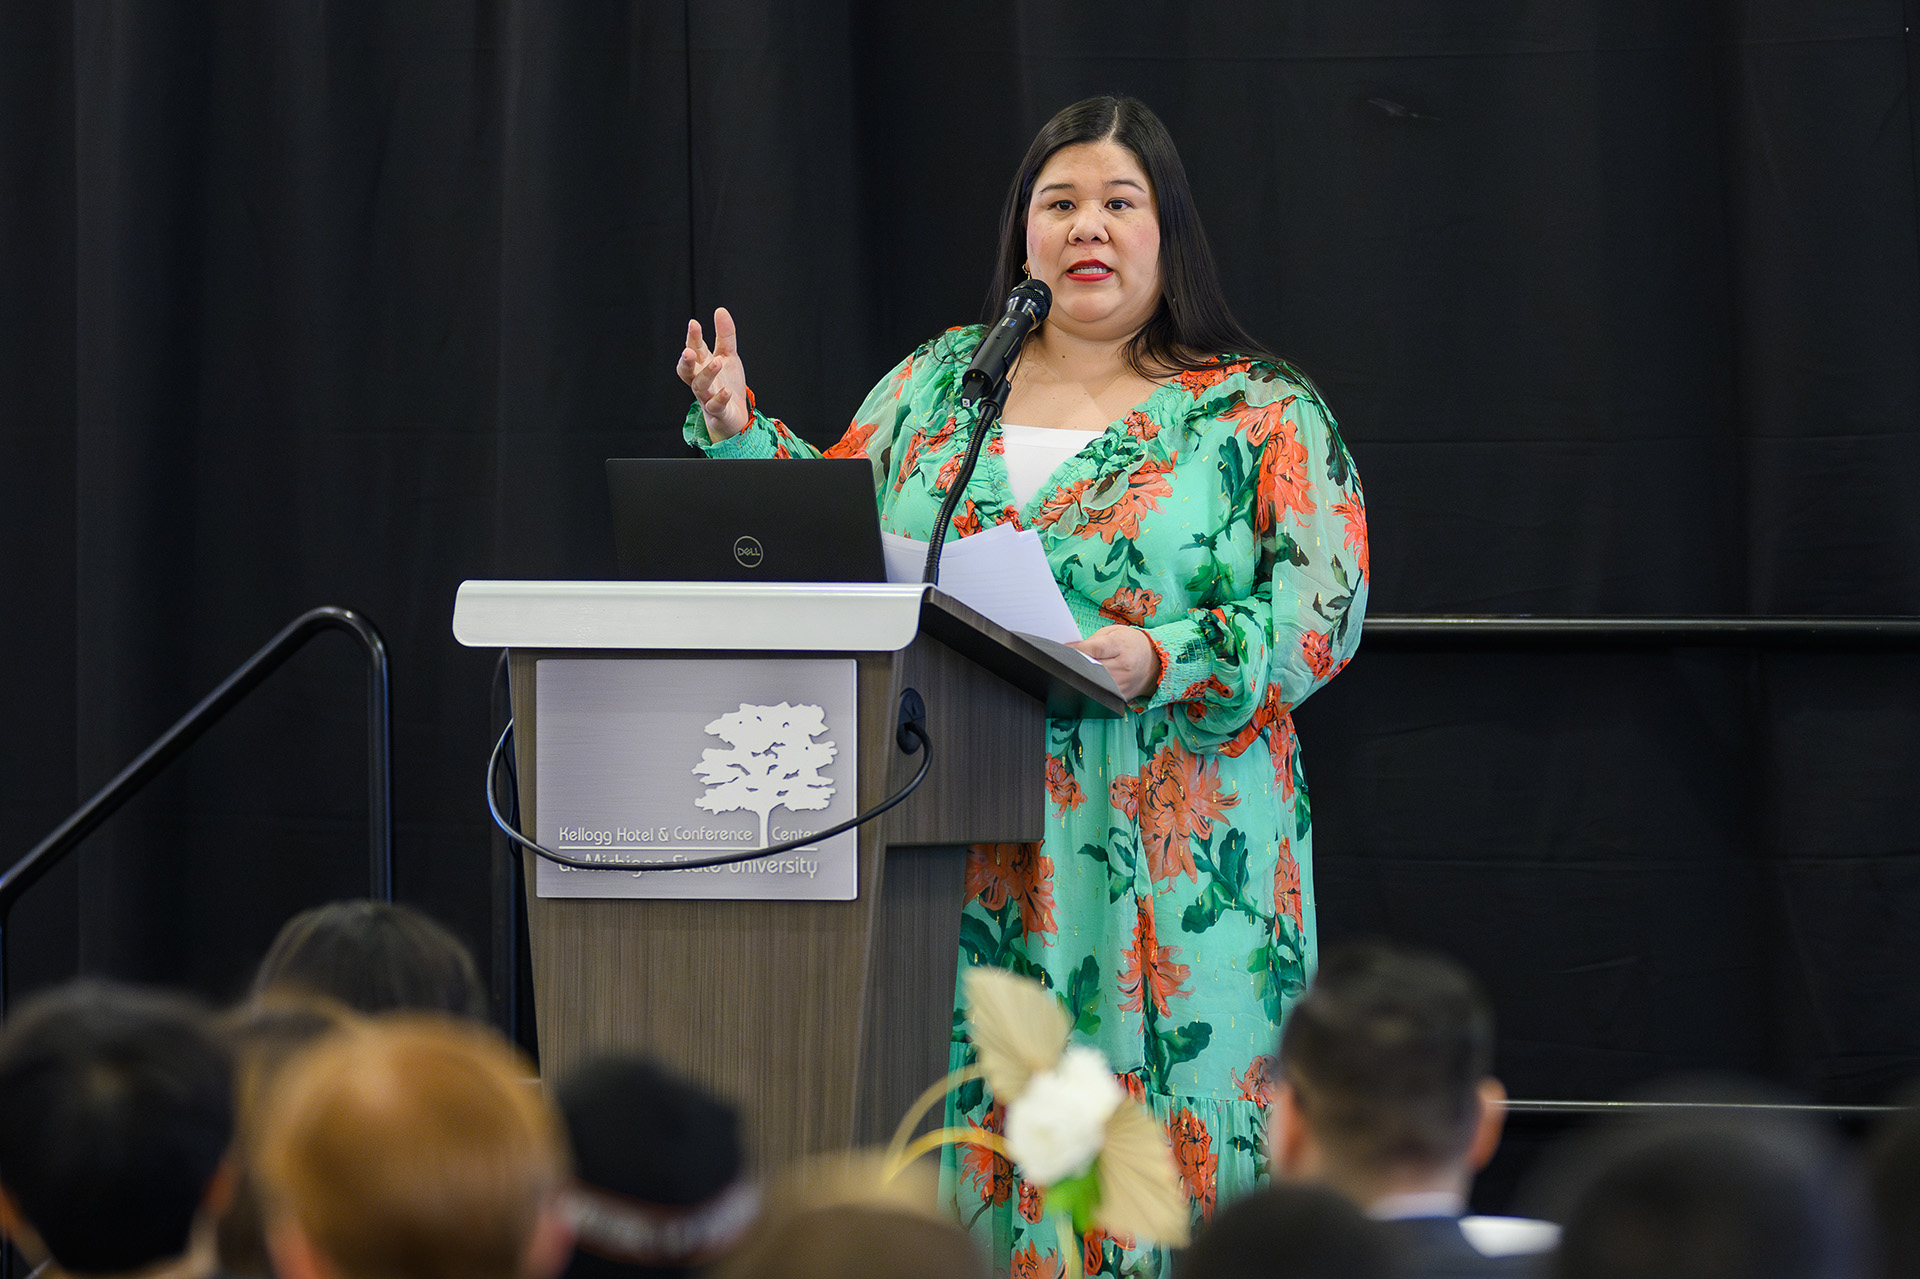 Keynote speaker Monica Ramirez speaks at the lectern wearing a colorful green dress